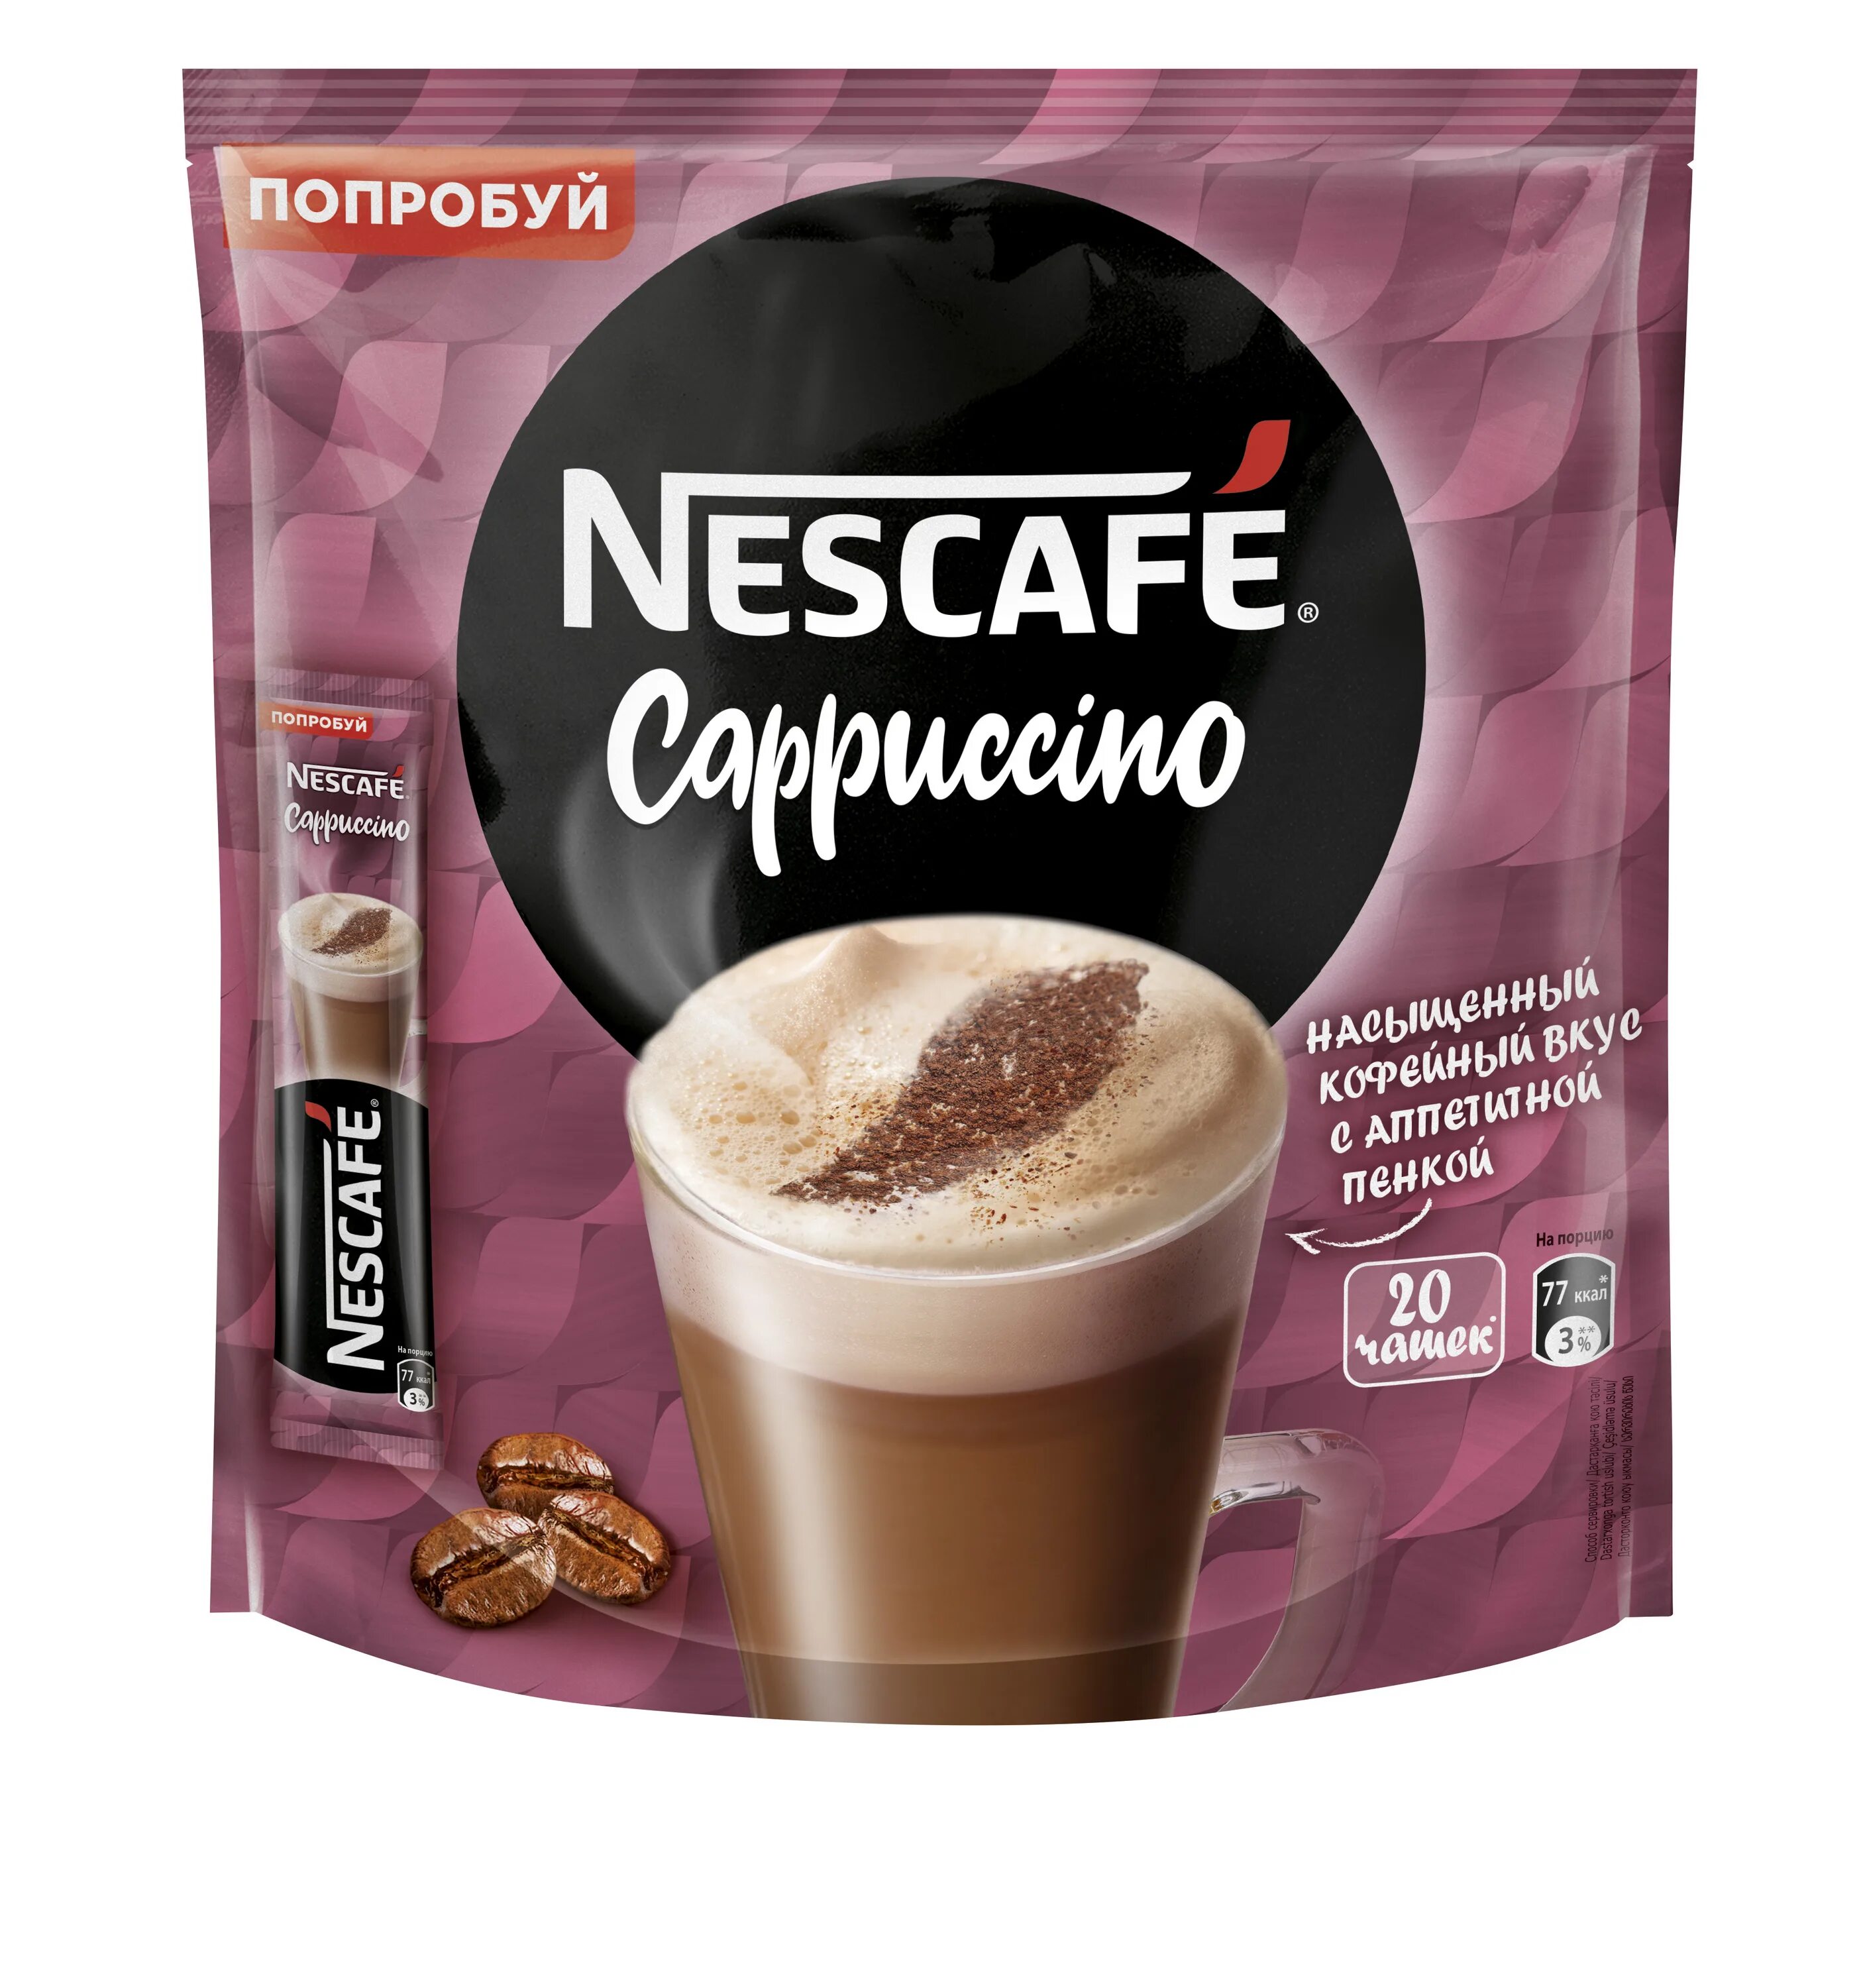 Купить nescafe растворимый кофе. Кофе Nescafe капучино 18г. Нескафе 3 в 1 капучино. Нескафе Cappuccino 18 гр. Нескафе Классик капучино 18г.